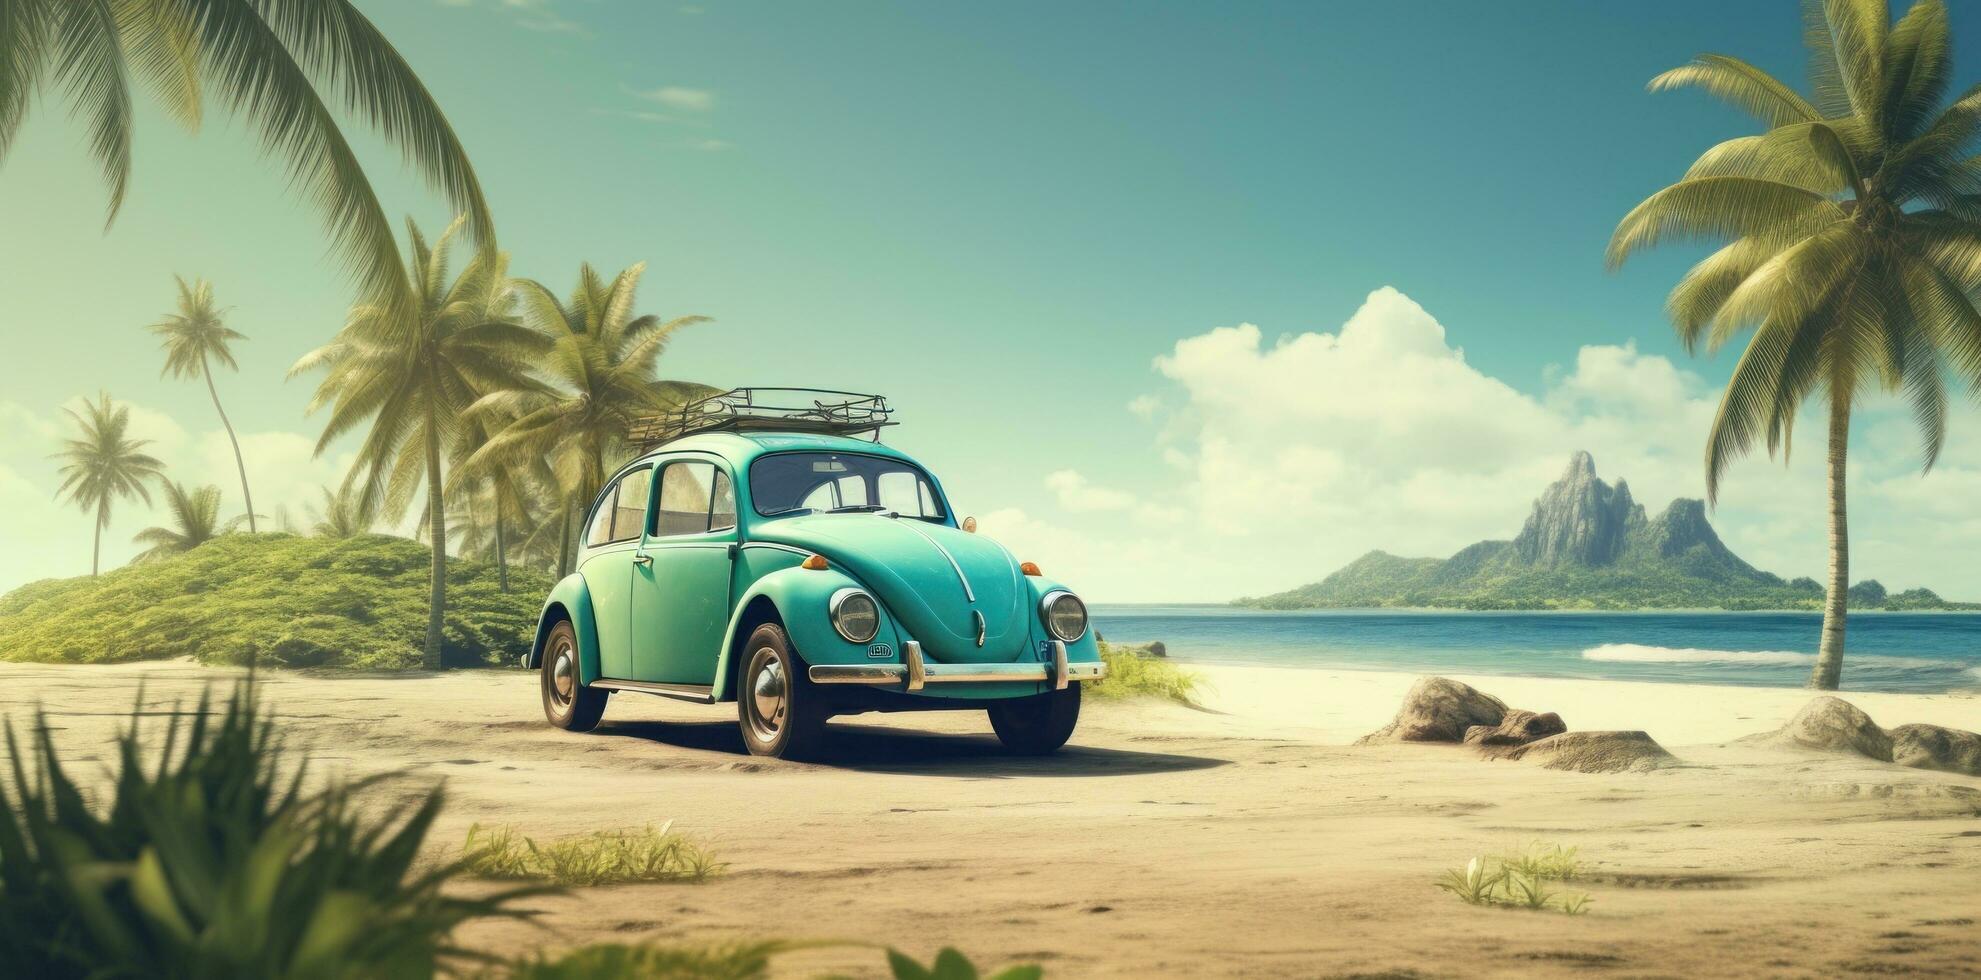 Cute retro beach car photo